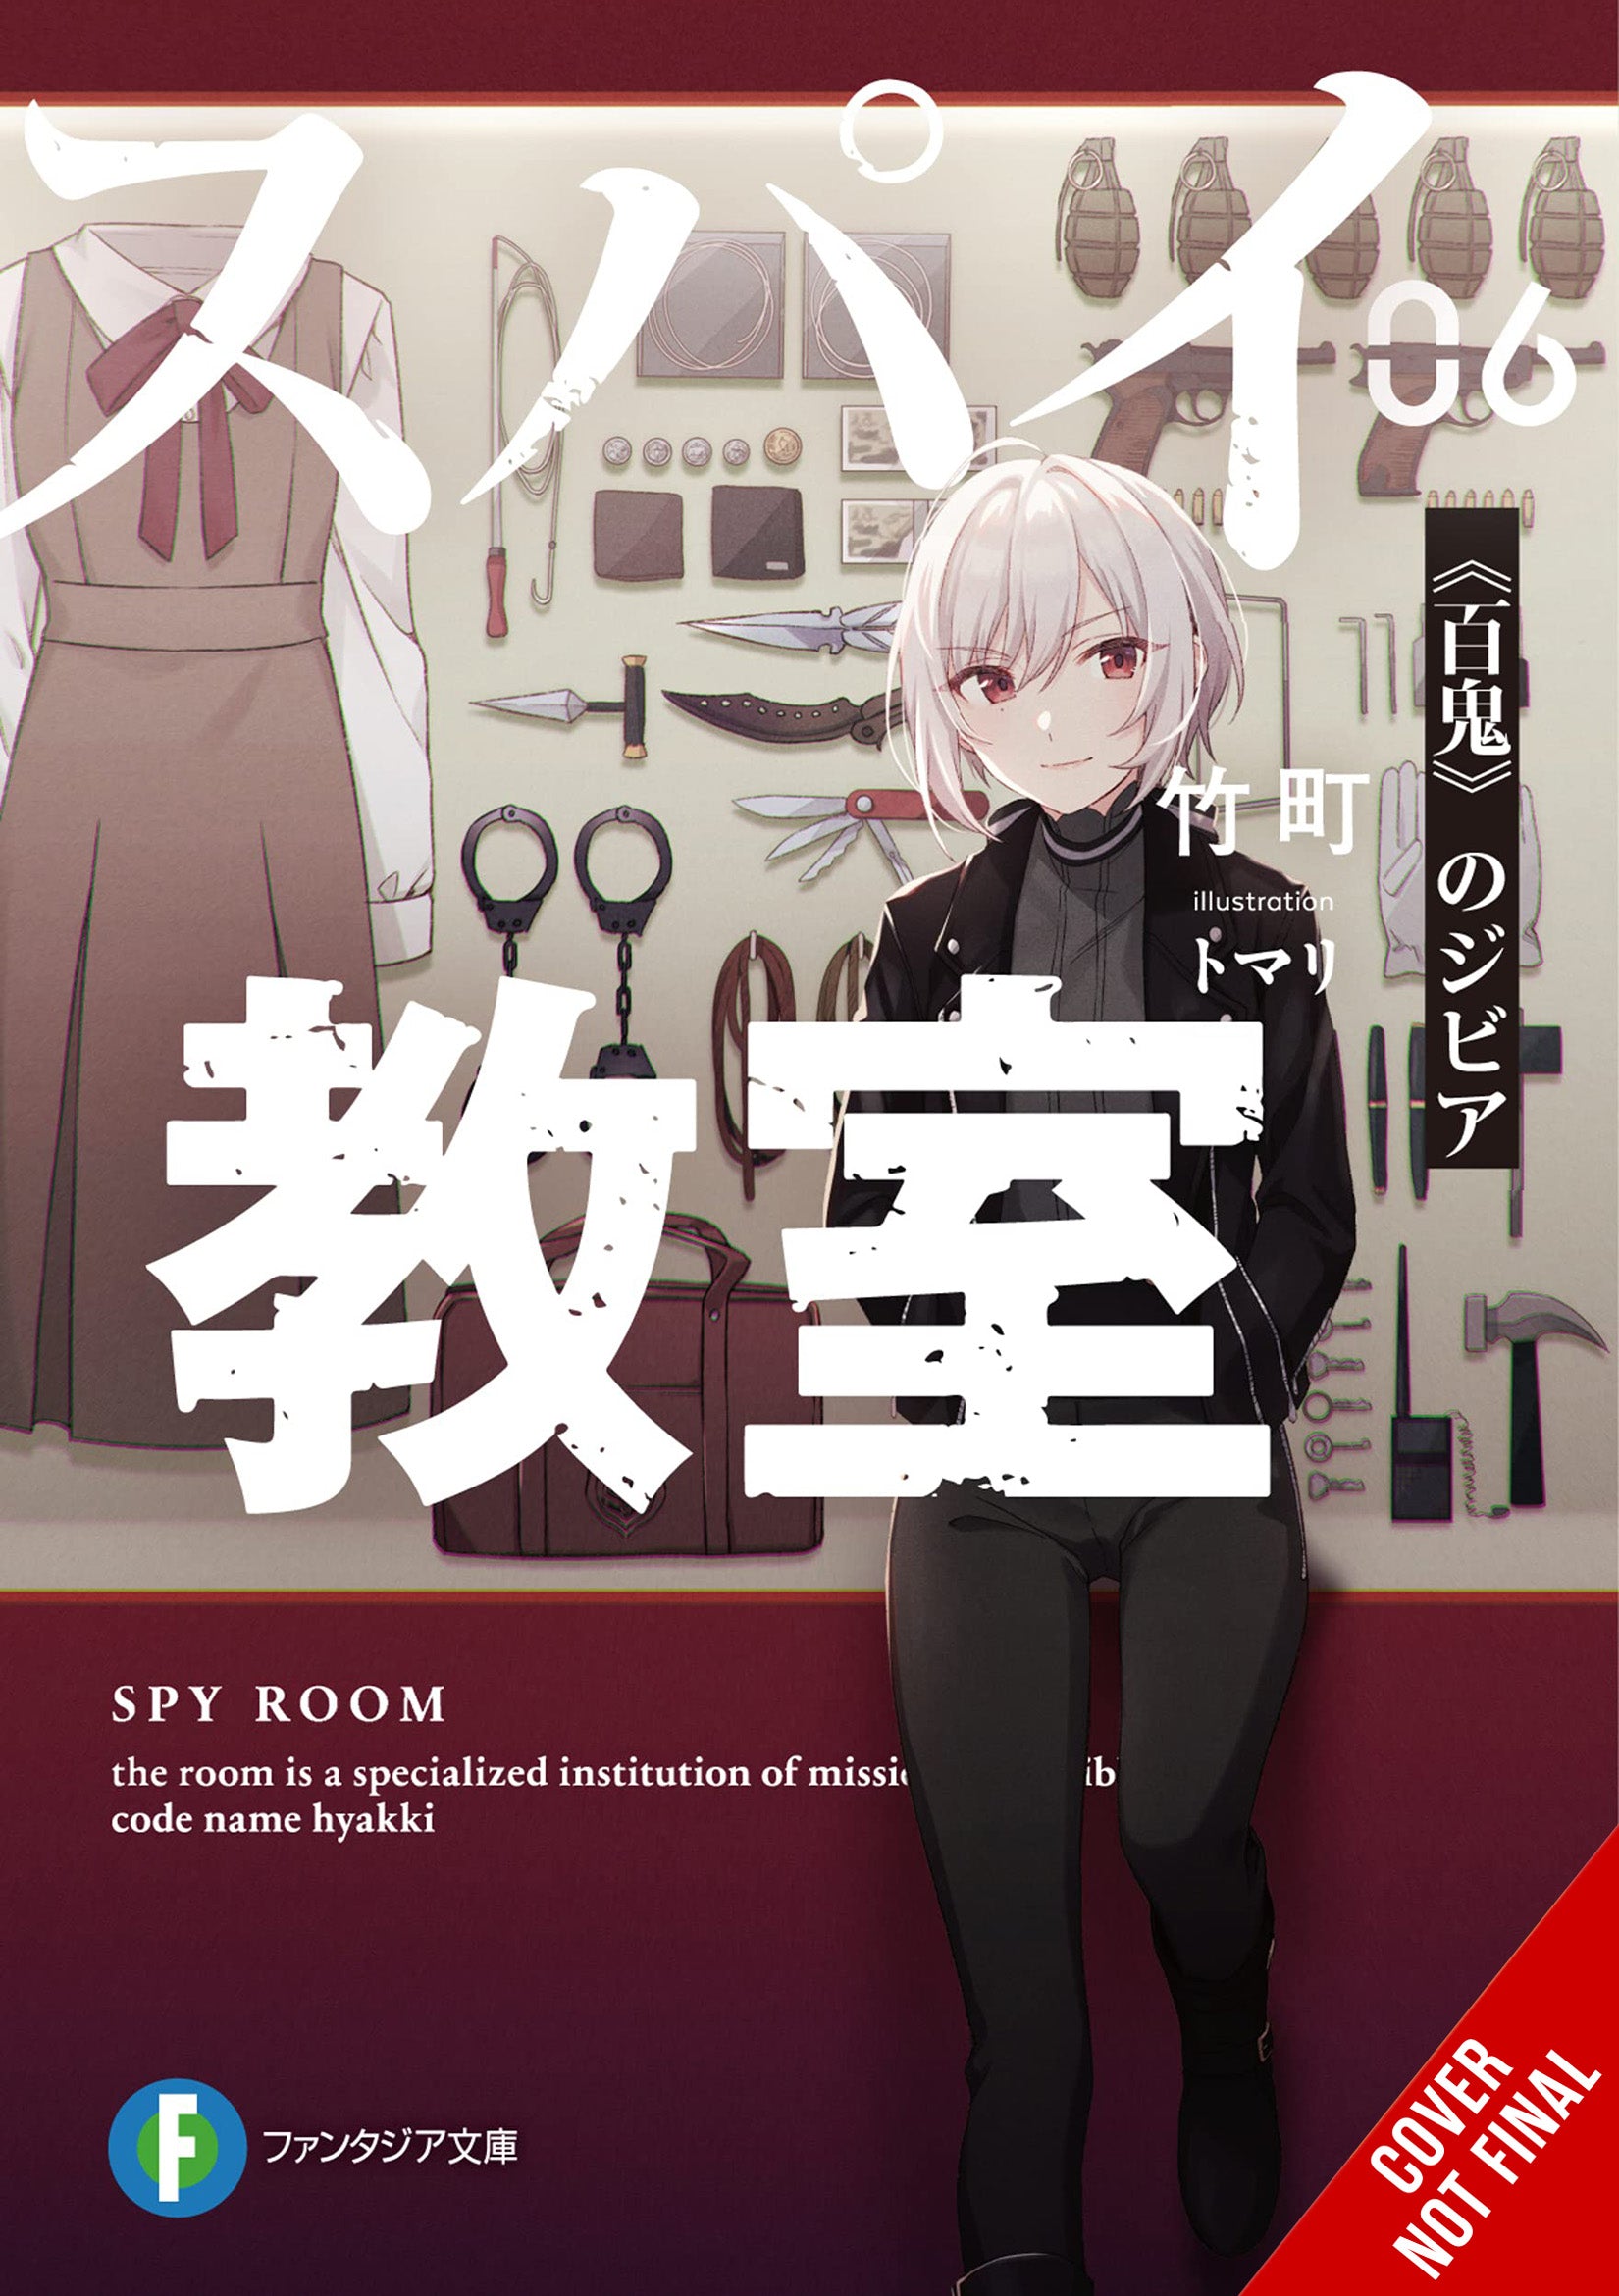 Faixa 01 - Anime X Novel